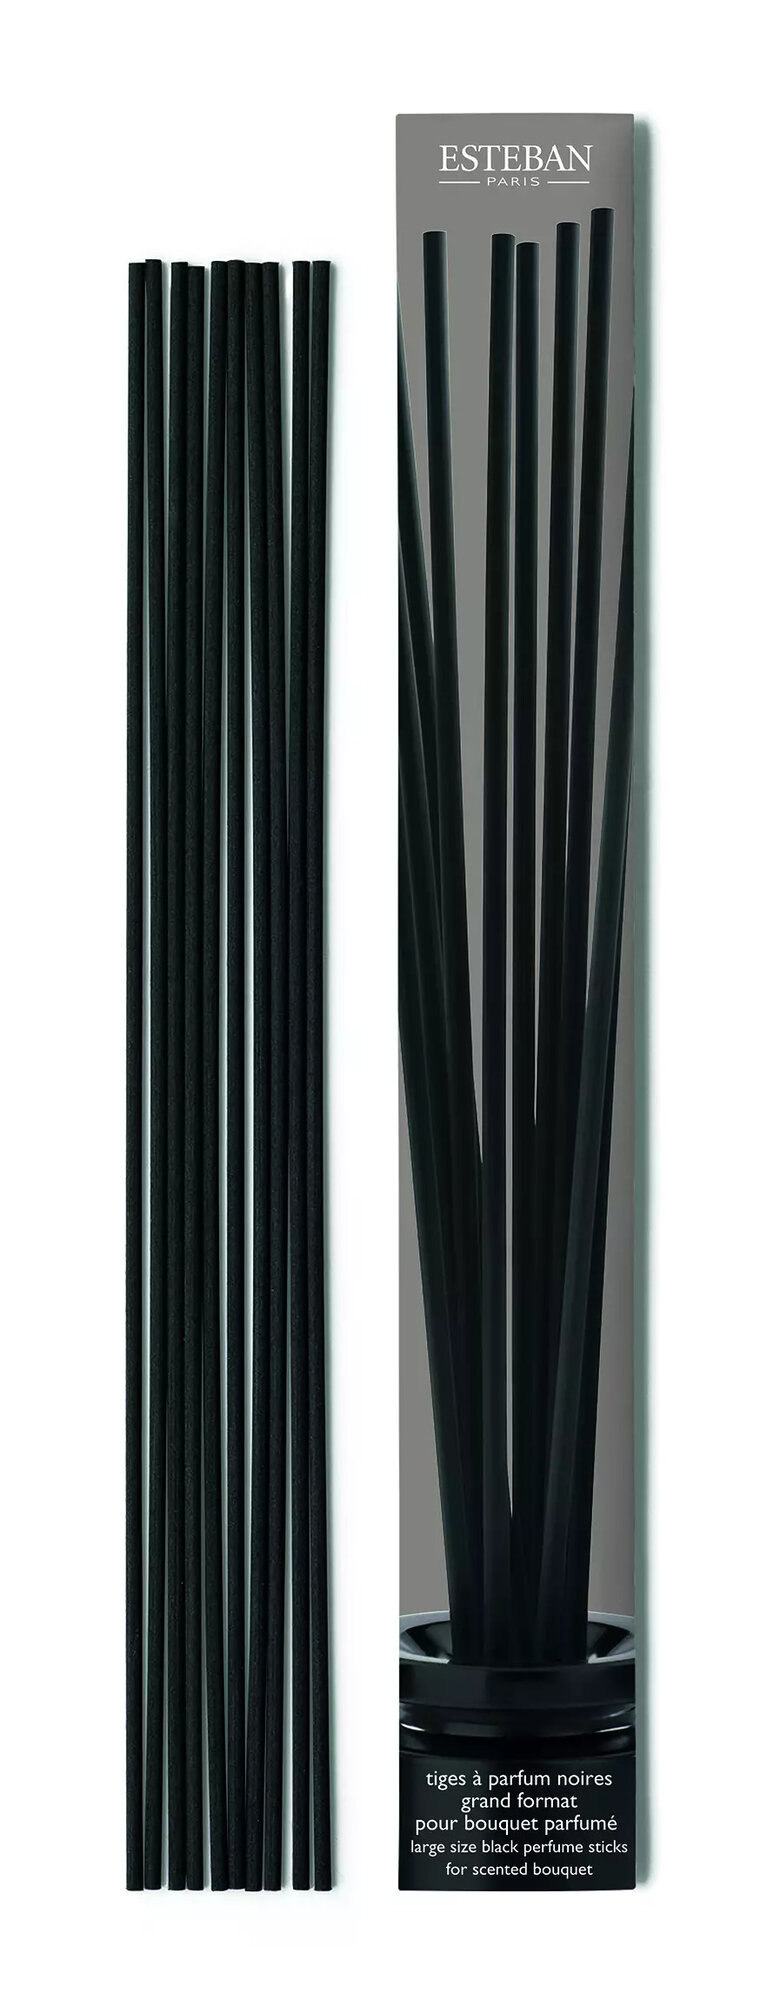 Палочки для аромадиффузора Esteban лавсановые (Черные), 34 см, 10 шт